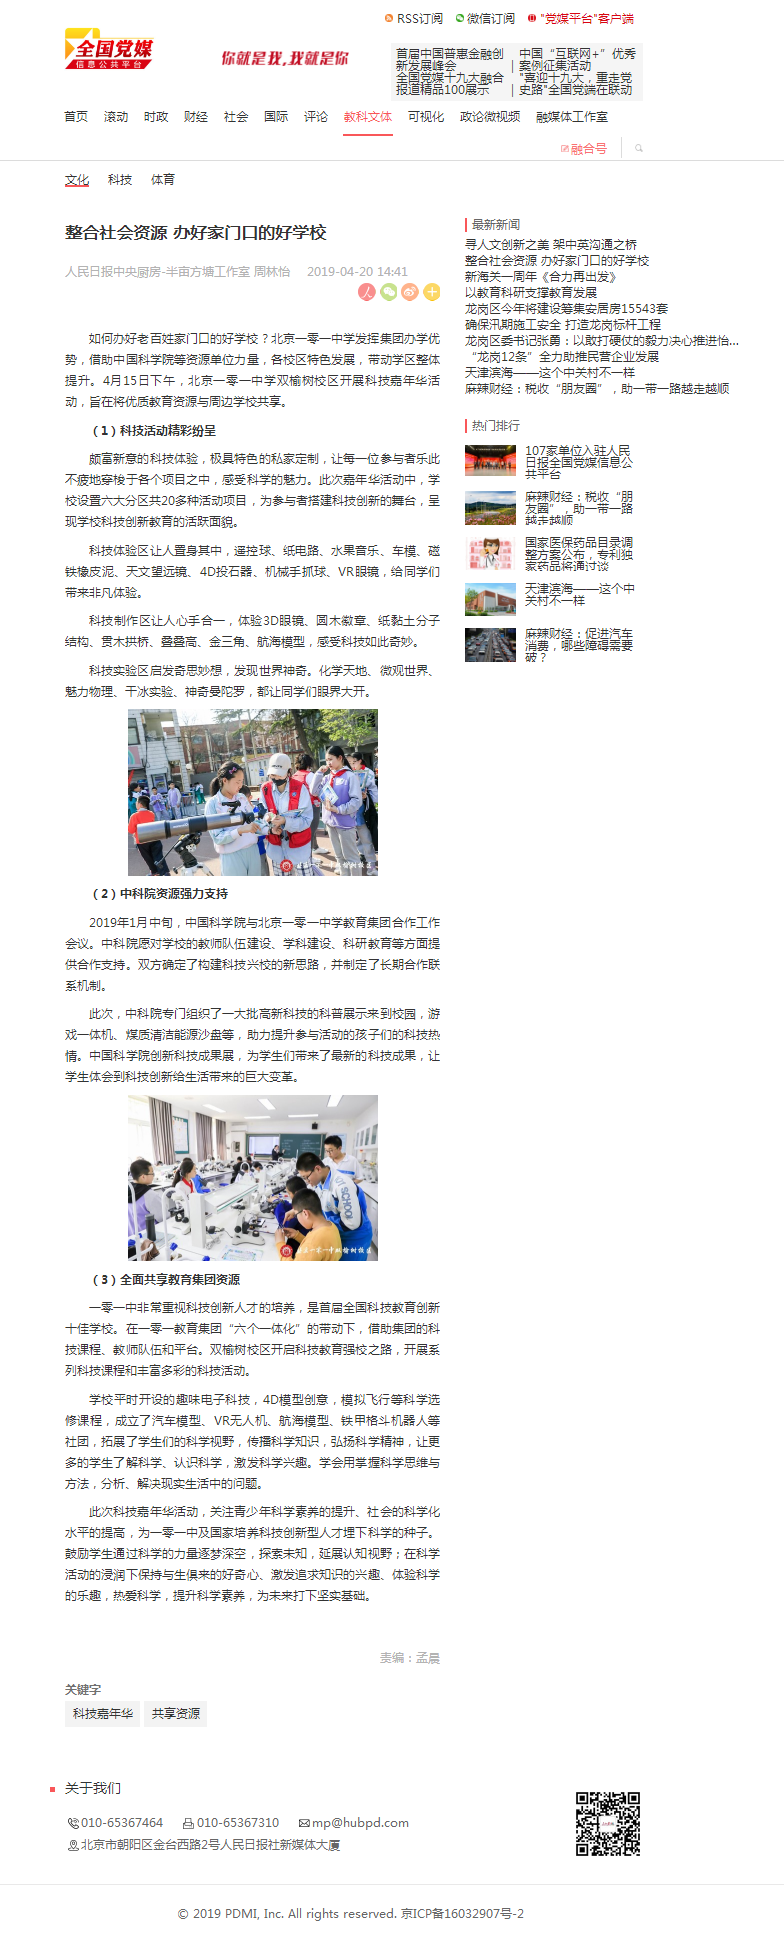 整合社会资源办好家门口的好学校 媒体报道 北京一零一中学初中部